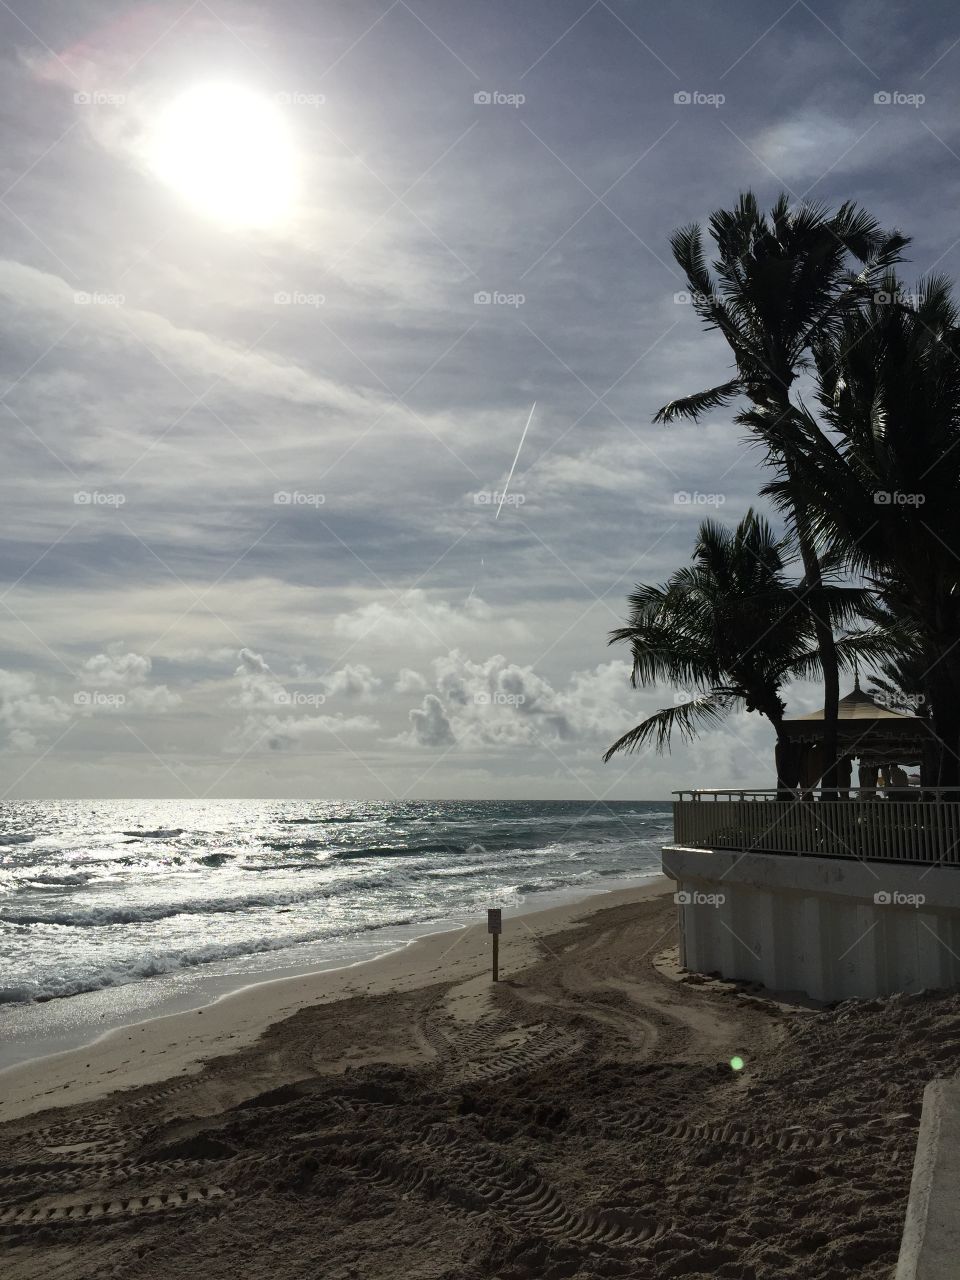 West Palm Beach ocean view 